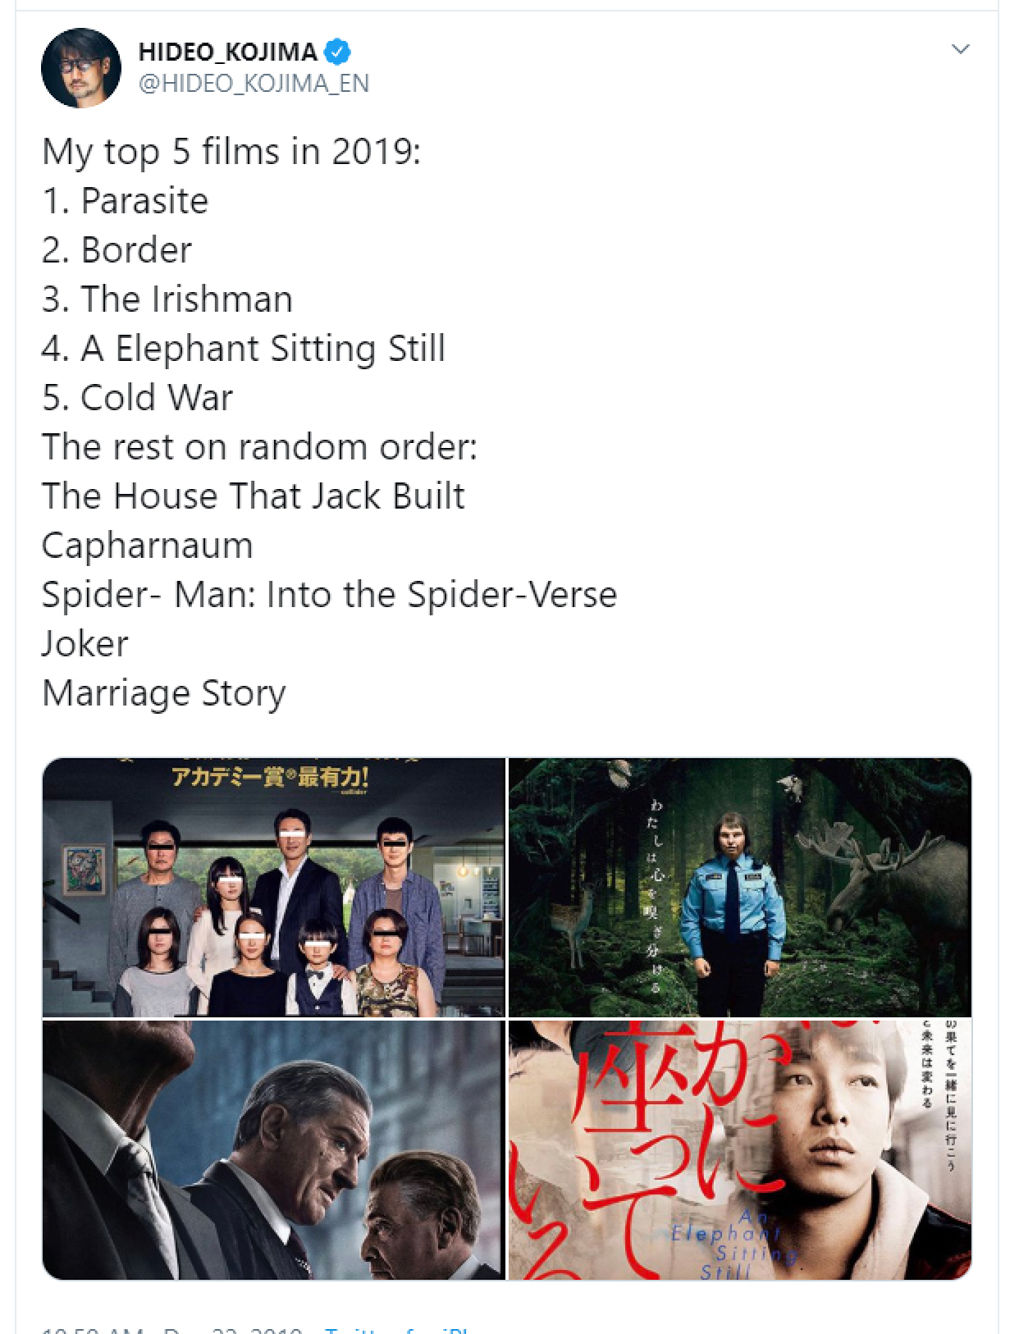 โคจิม่า เผยลิสต์รายชื่อหนังที่ชอบมากที่สุดในปี 2019